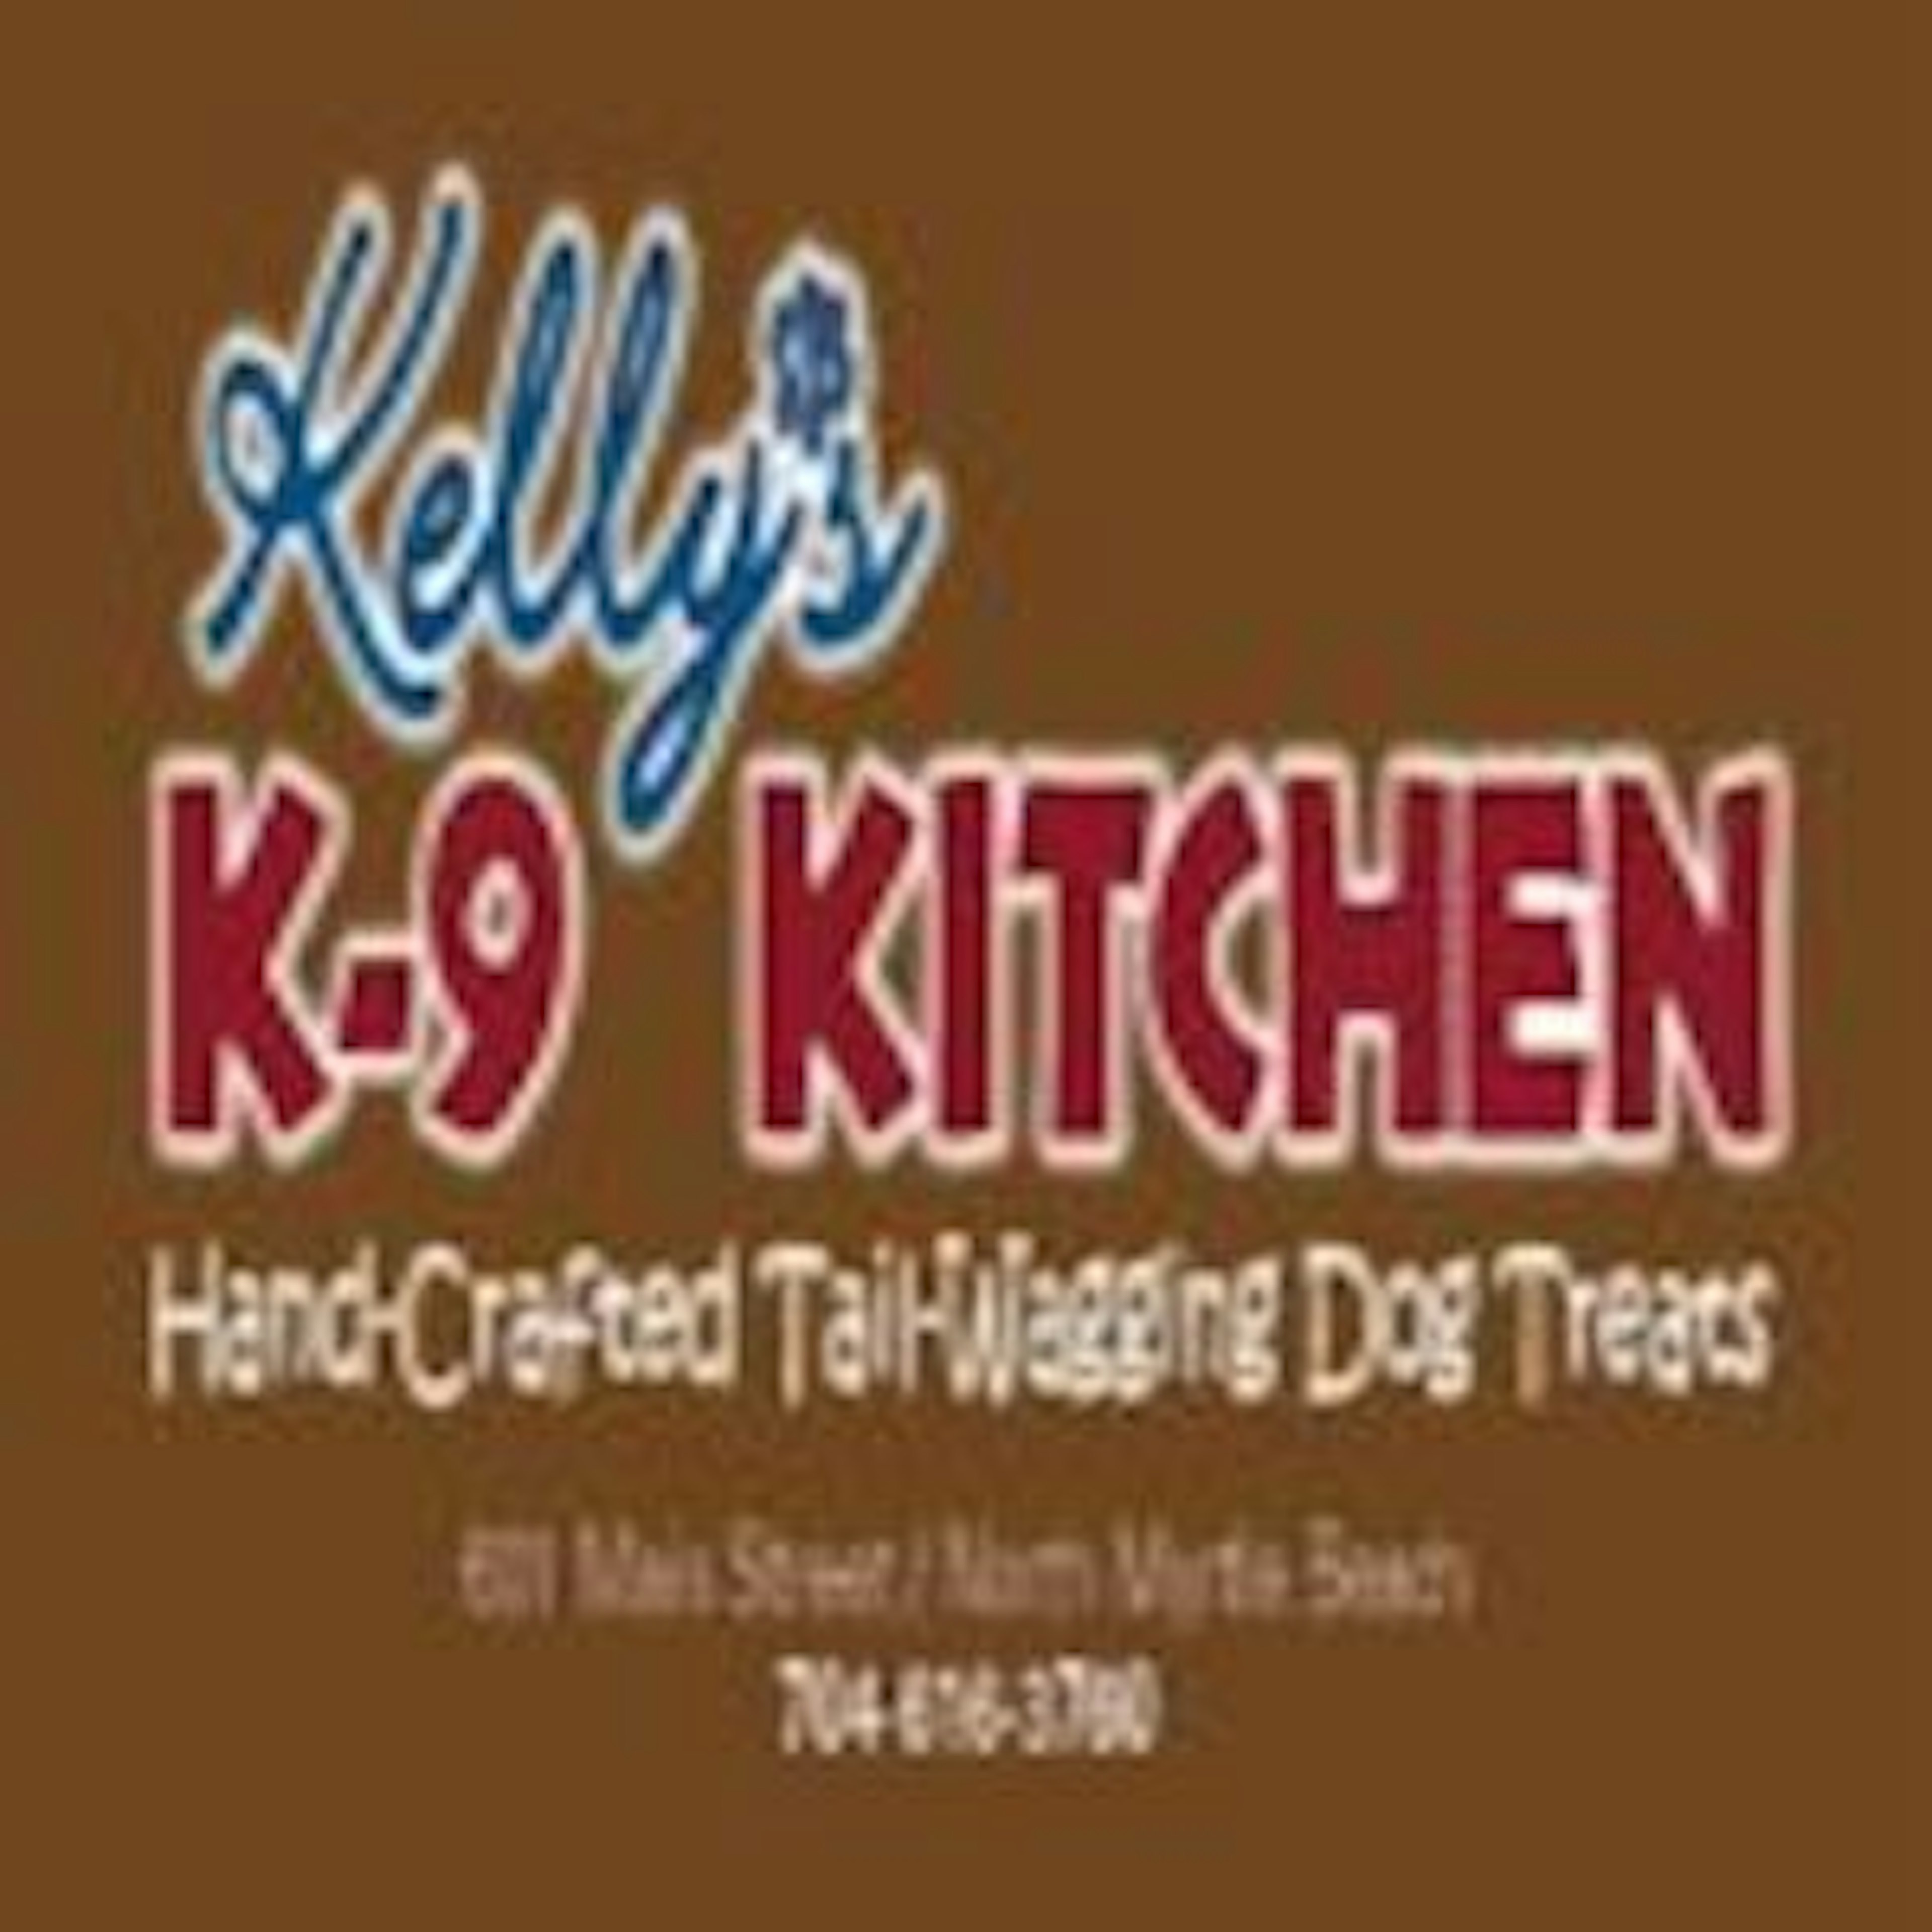 Kelly’s K-9 Kitchen